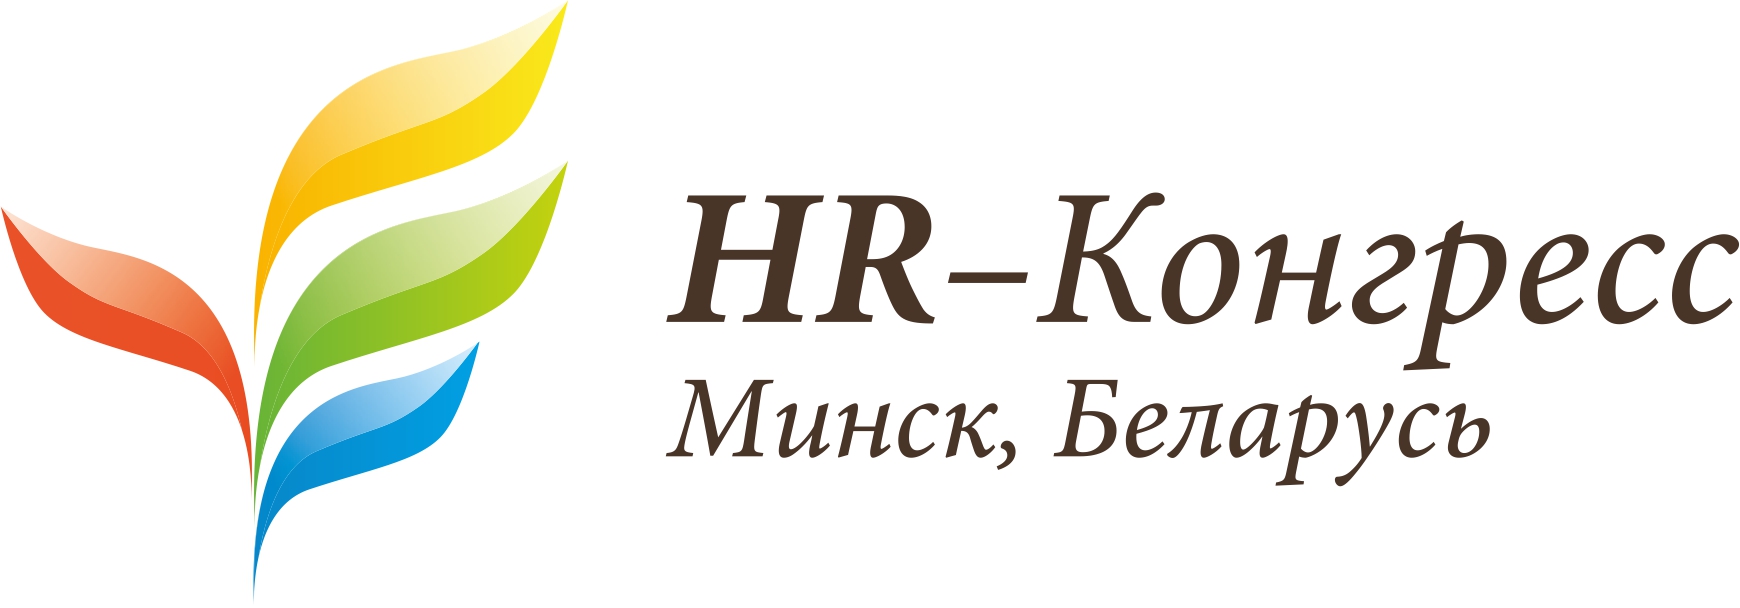 HR-congress-logo_v11.jpg